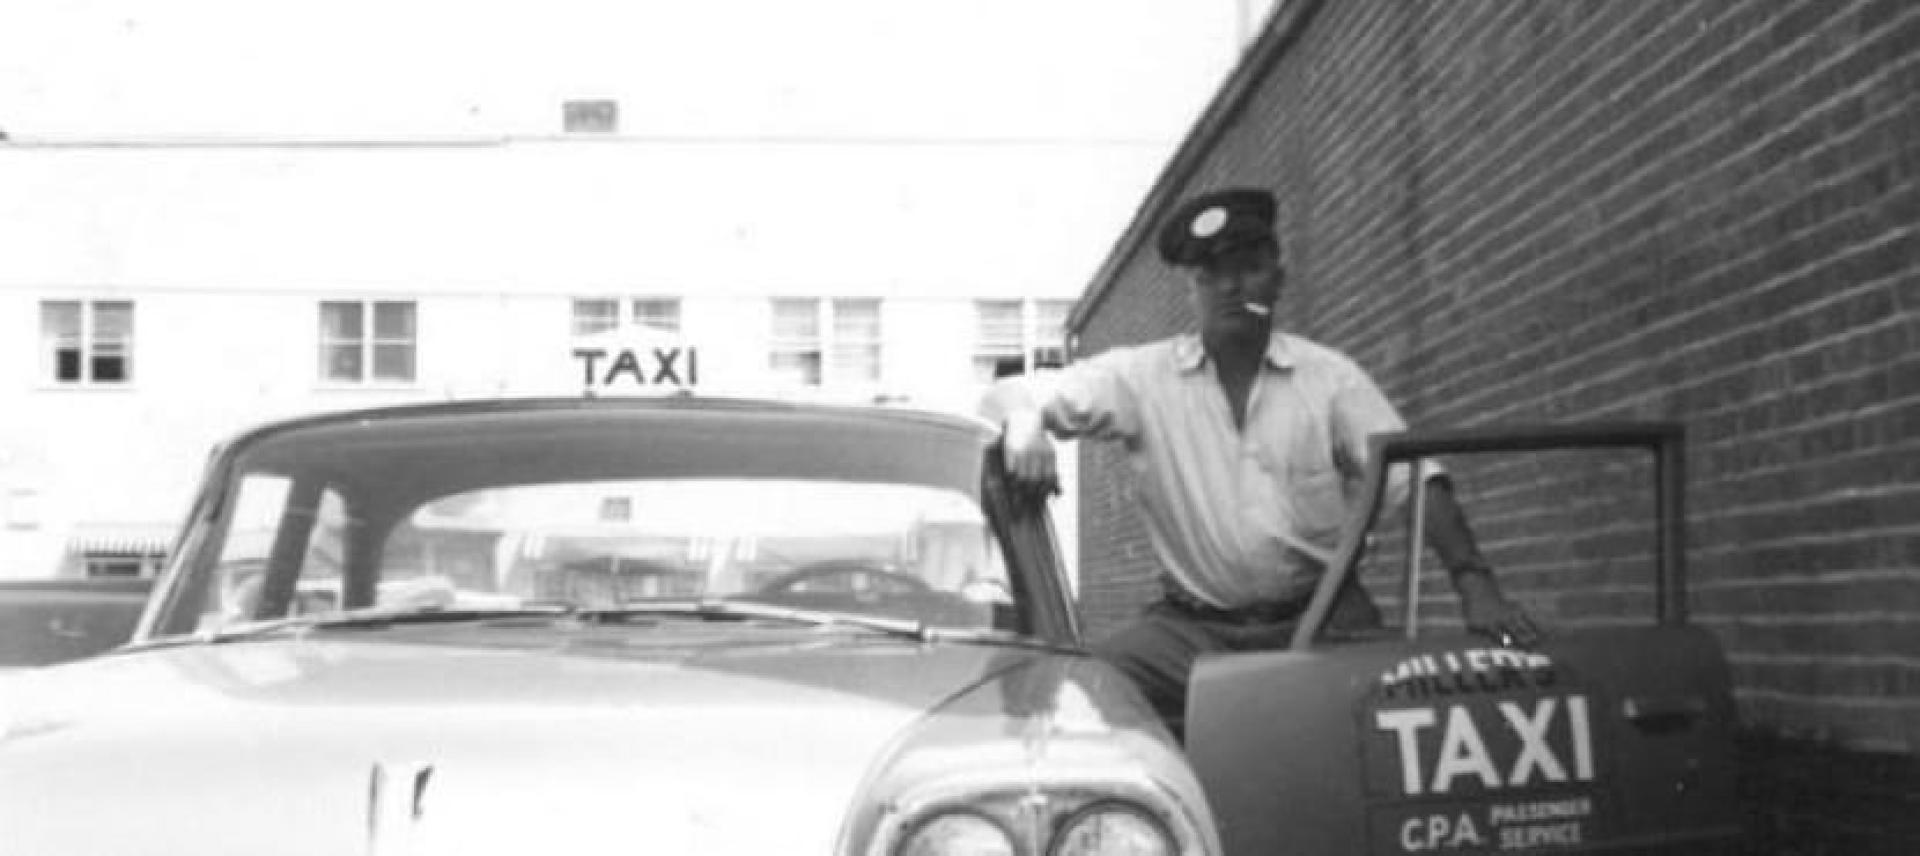 Miller Taxi Building - Vintage